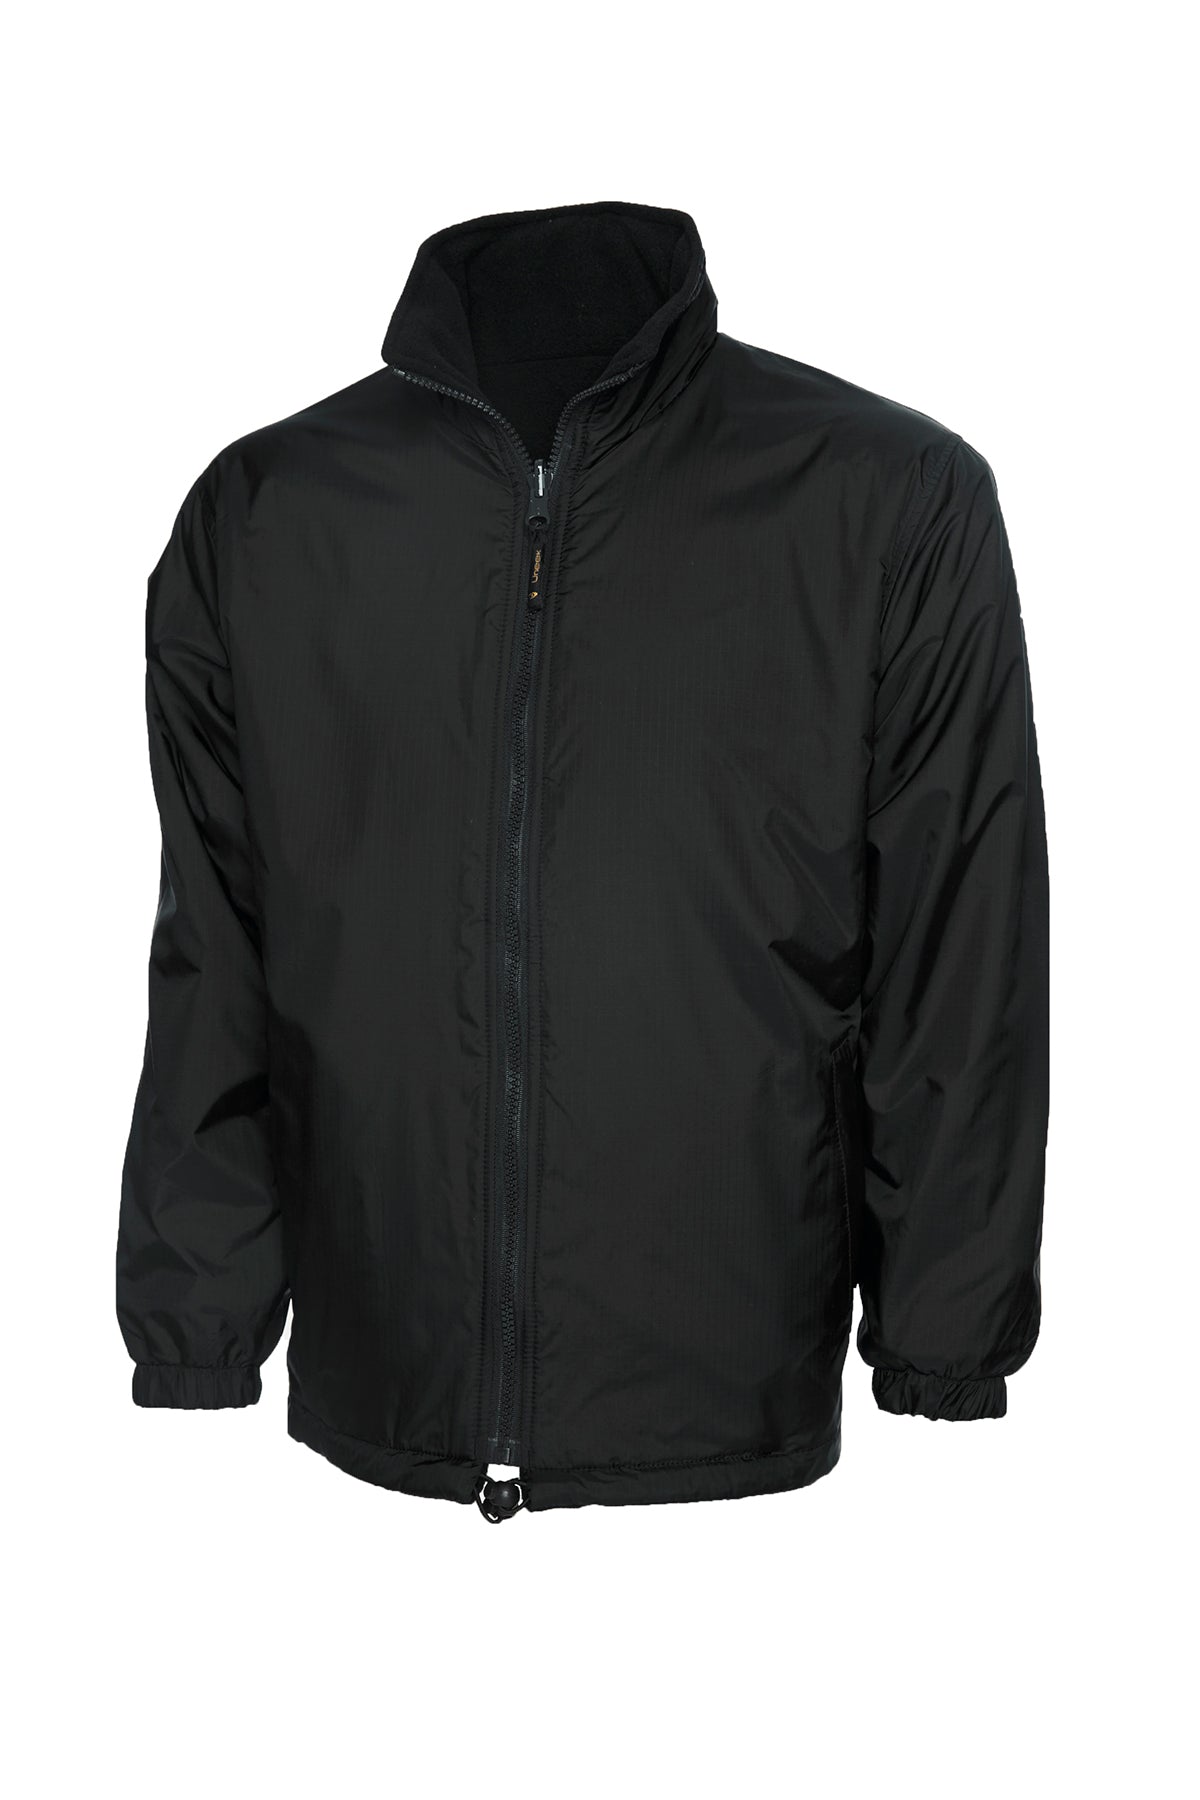 Uneek Premium Reversible Fleece Jacket UC605 - Black